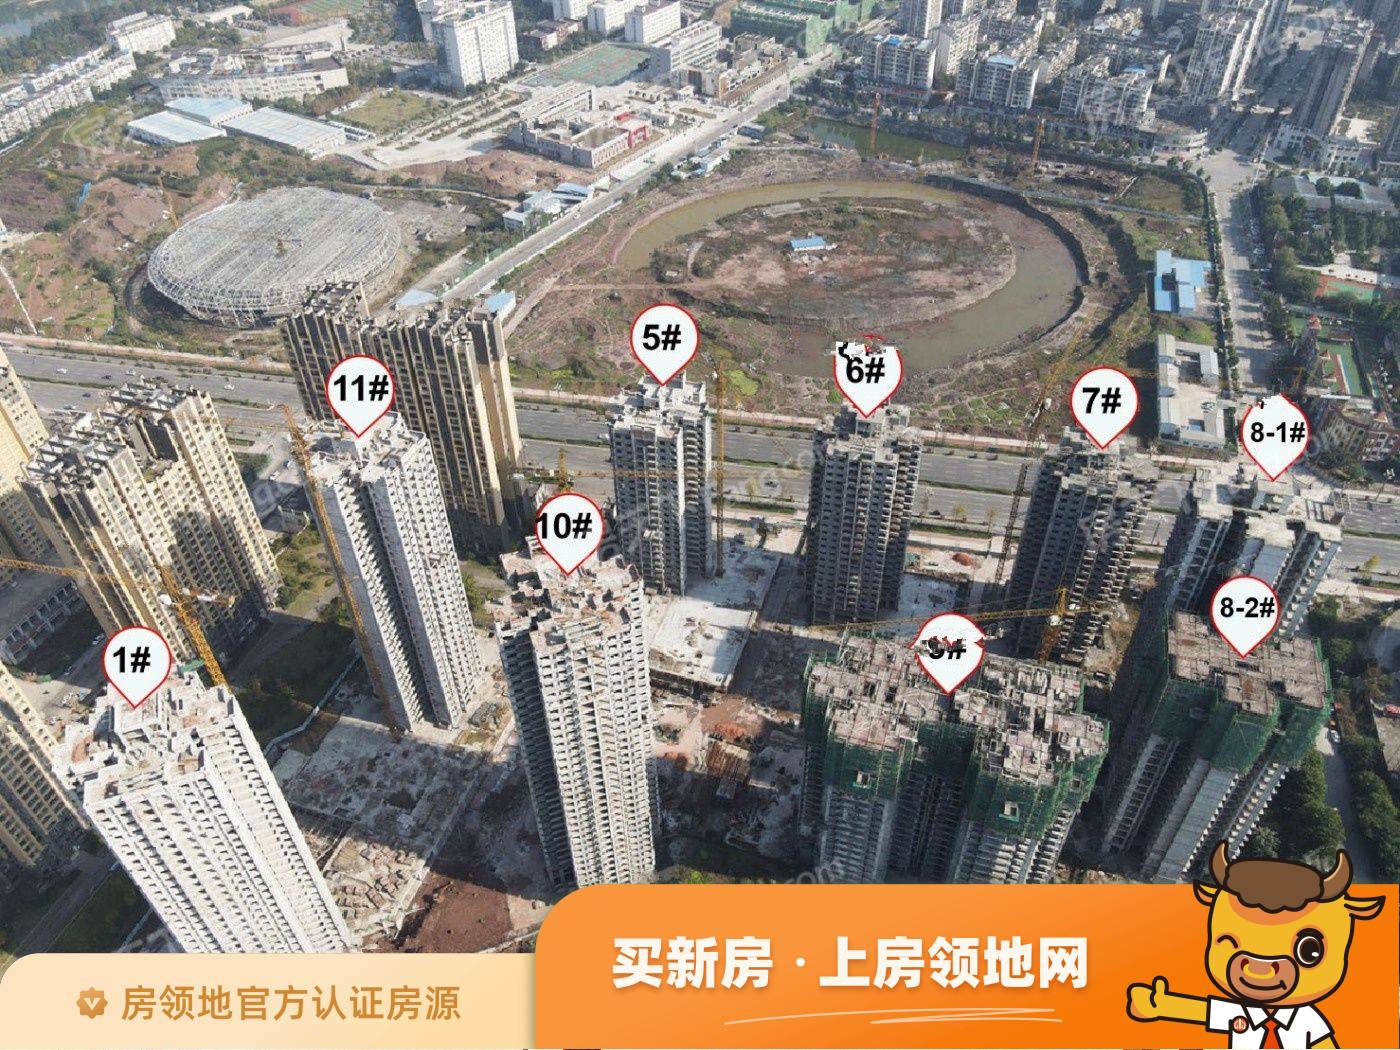 锦绣山河低碳智慧新城实景图2